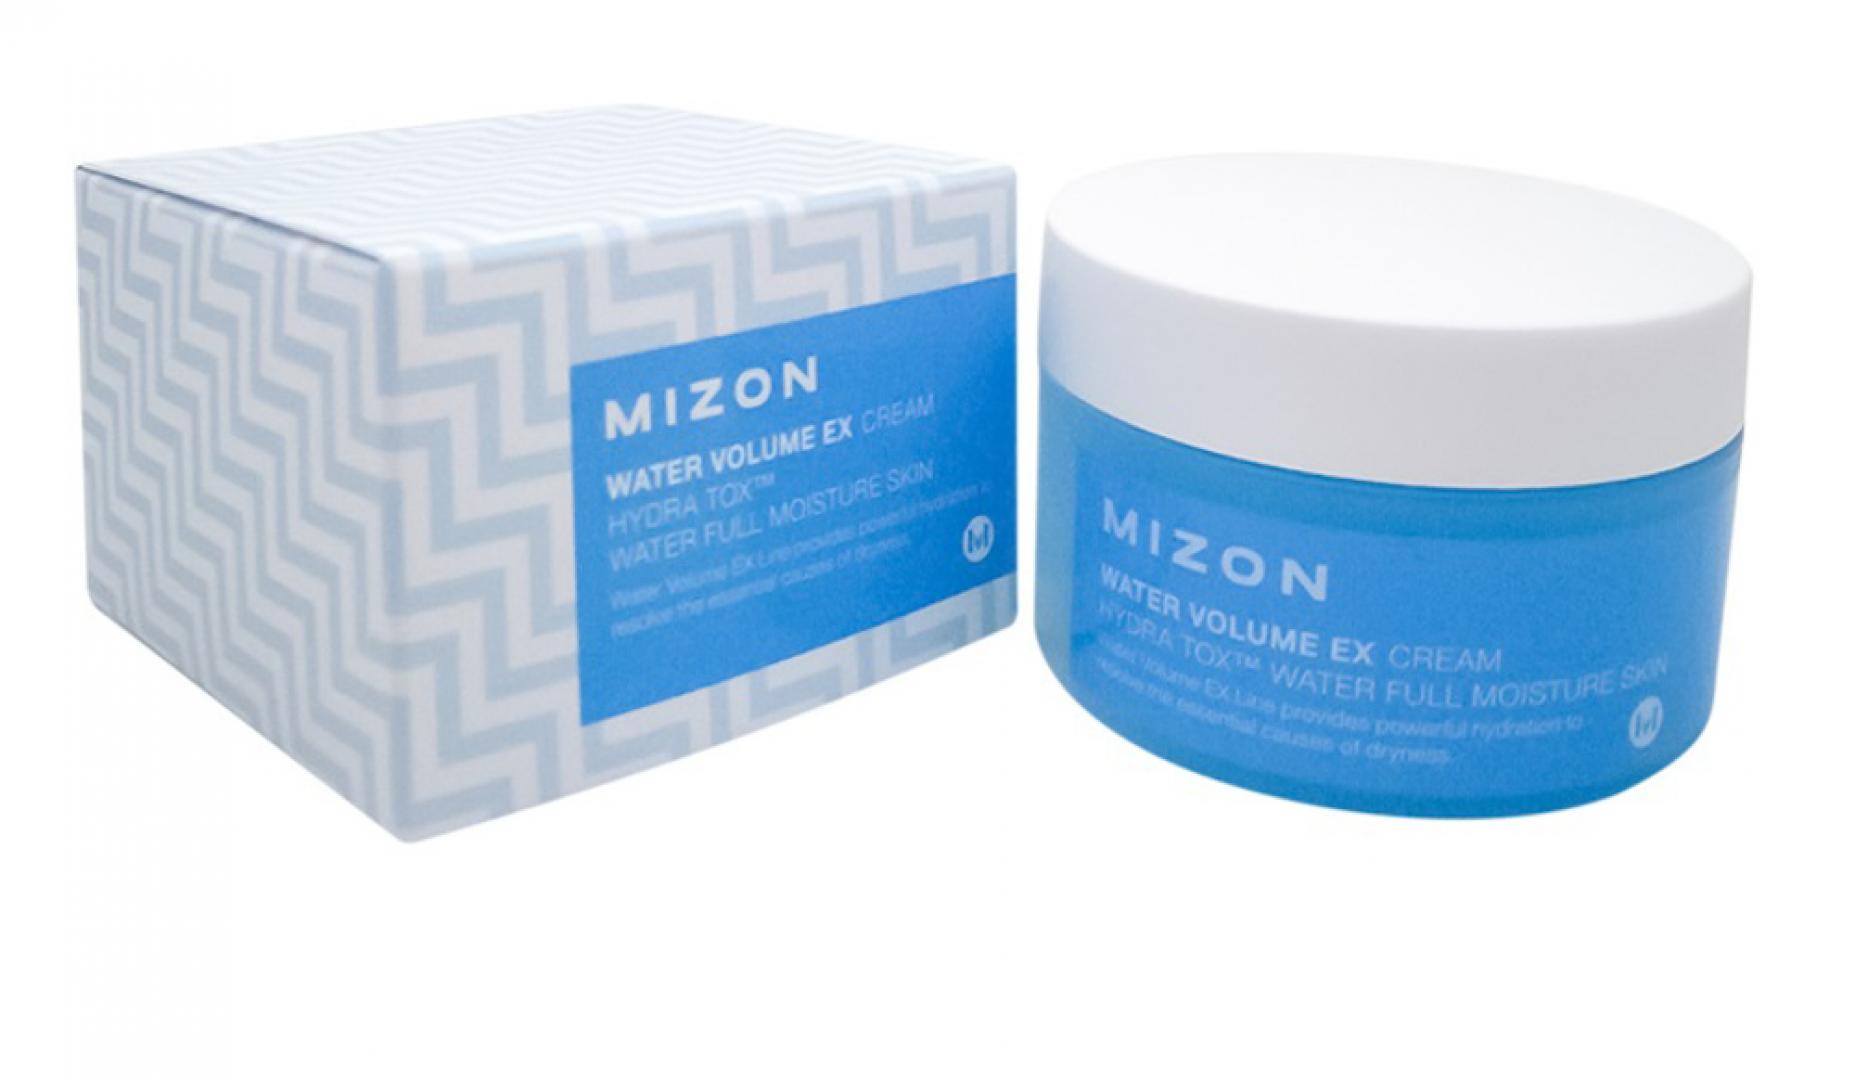 Увлажняющий крем для лица со снежными водорослями (Water volume EX cream) Mizon | Мизон 100мл